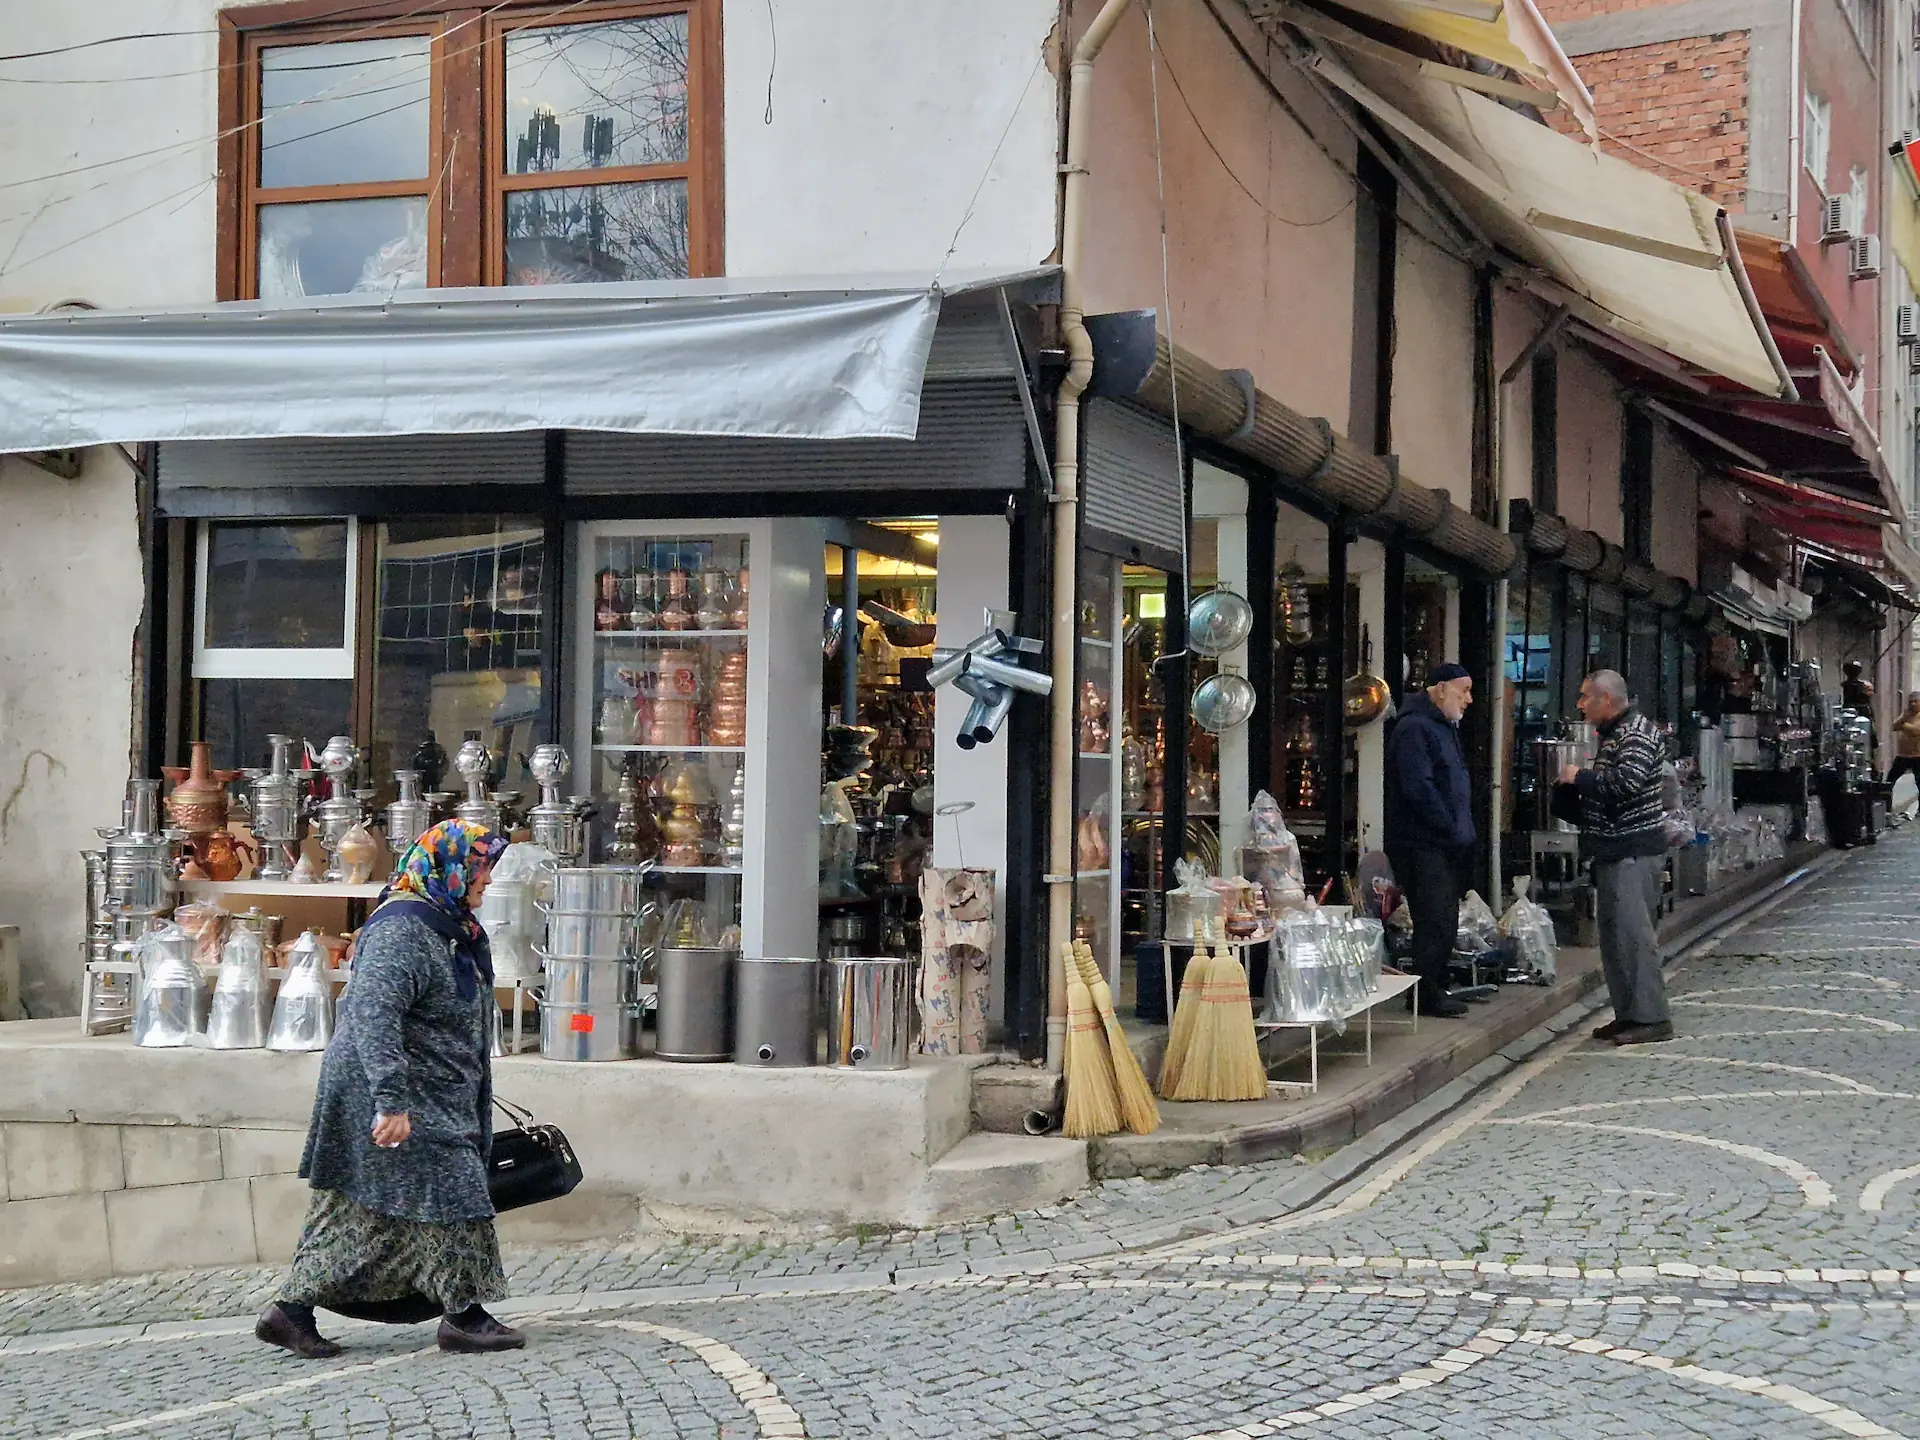 Un petit magasin de théières dans un coin de rue. Une vieille dame passe devant en marchant.